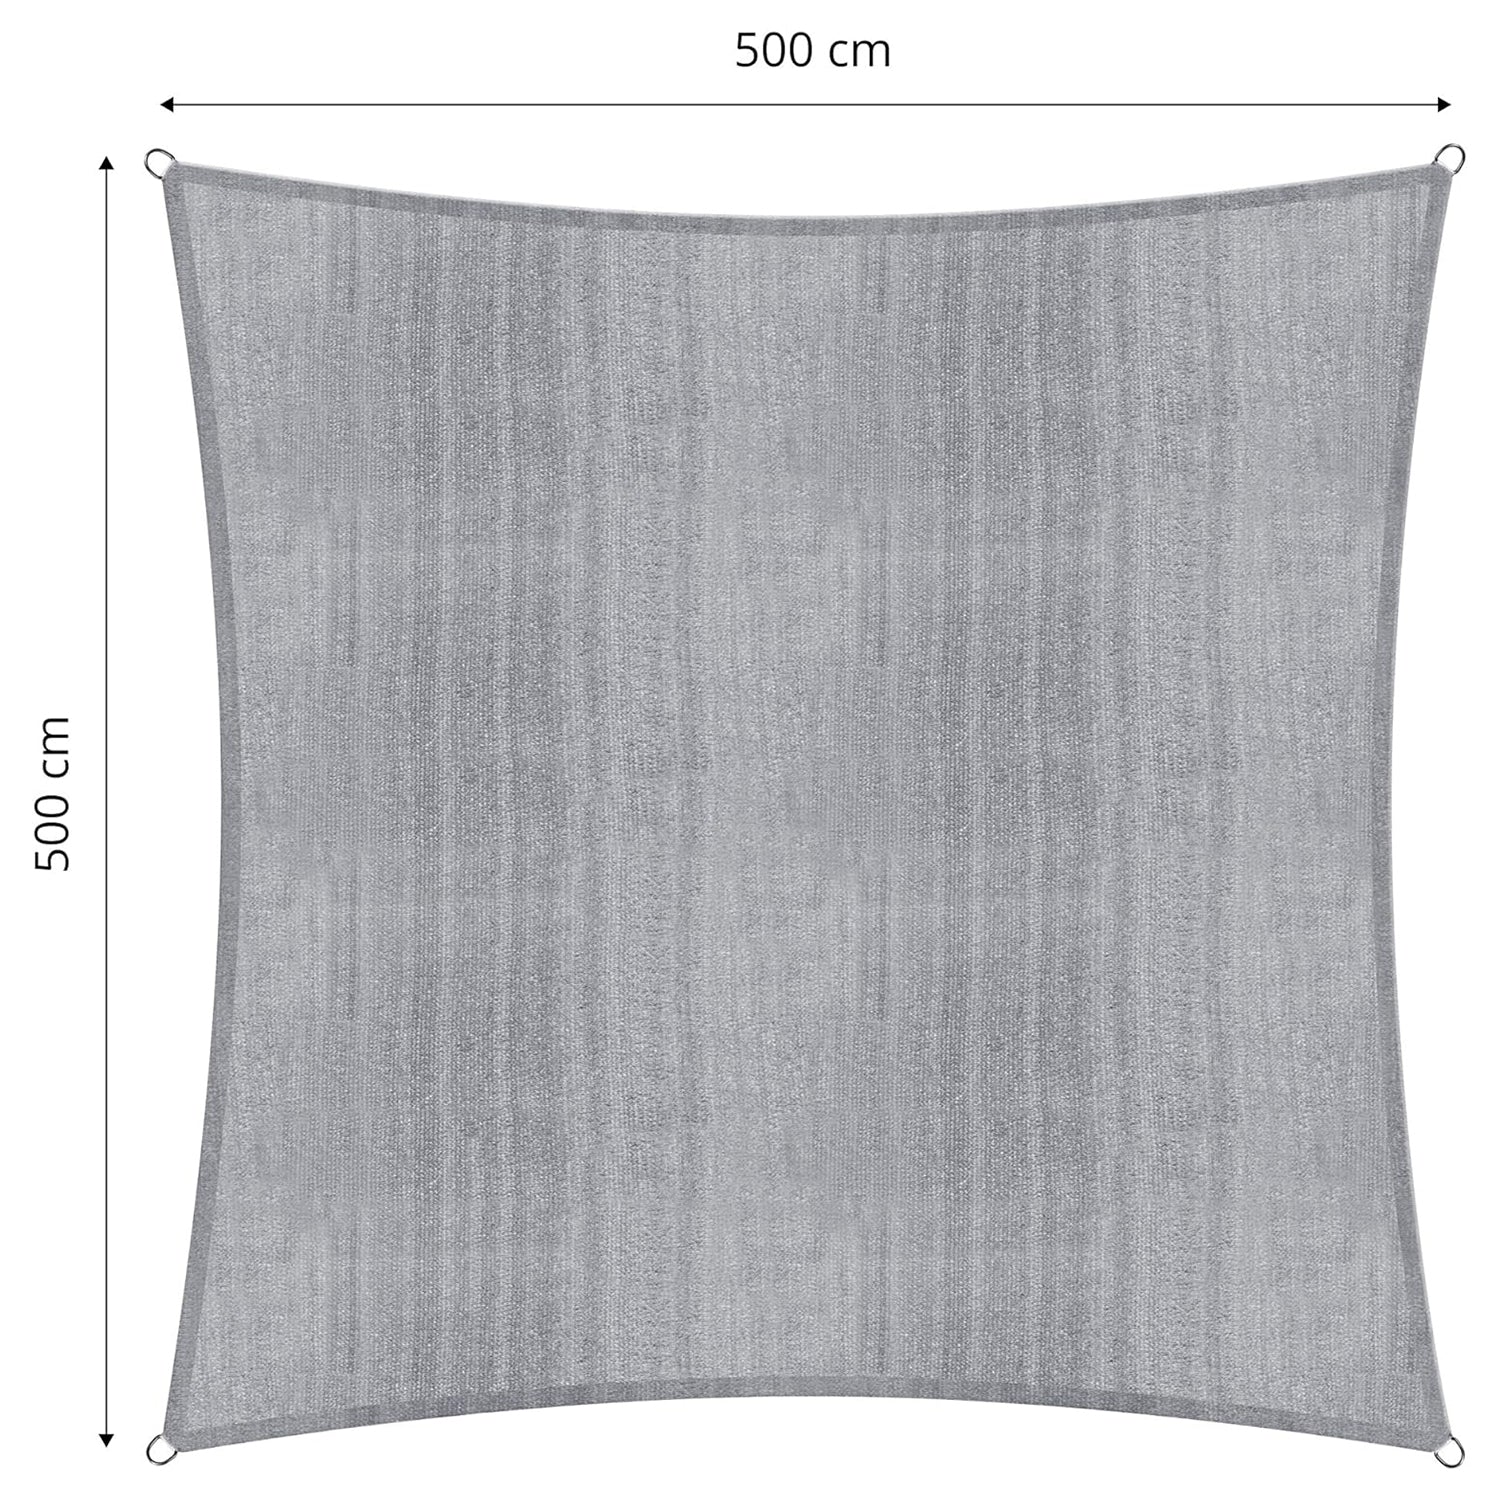 Sonnensegel 100% HDPE mit Stabilisator für UV-Schutz - Quadrat 5 x 5 Meter - Hellgrau